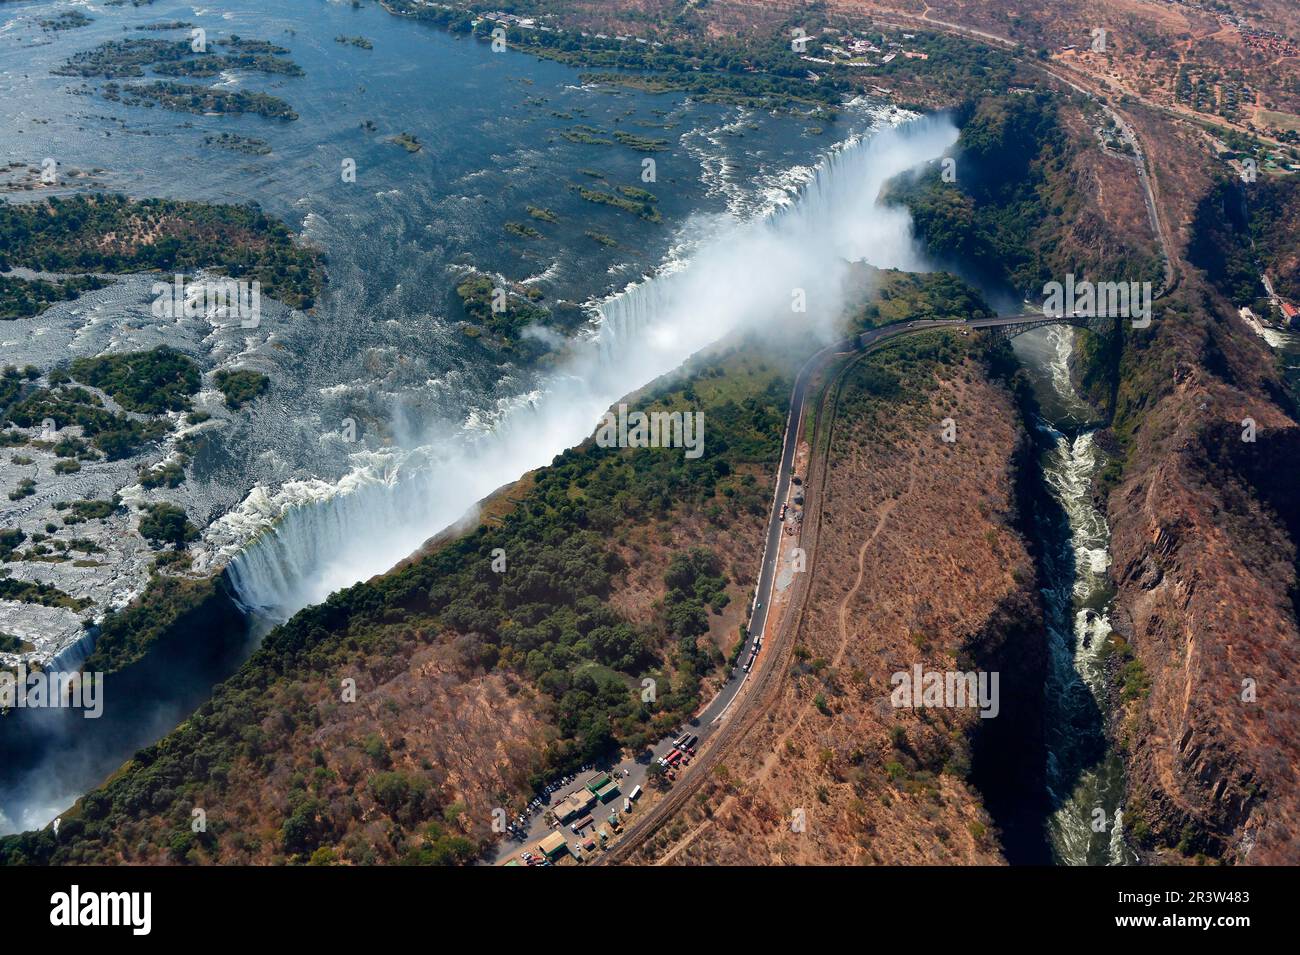 Victoria falls, Zambezi, Victoria Falls, Zimbabwe Stock Photo